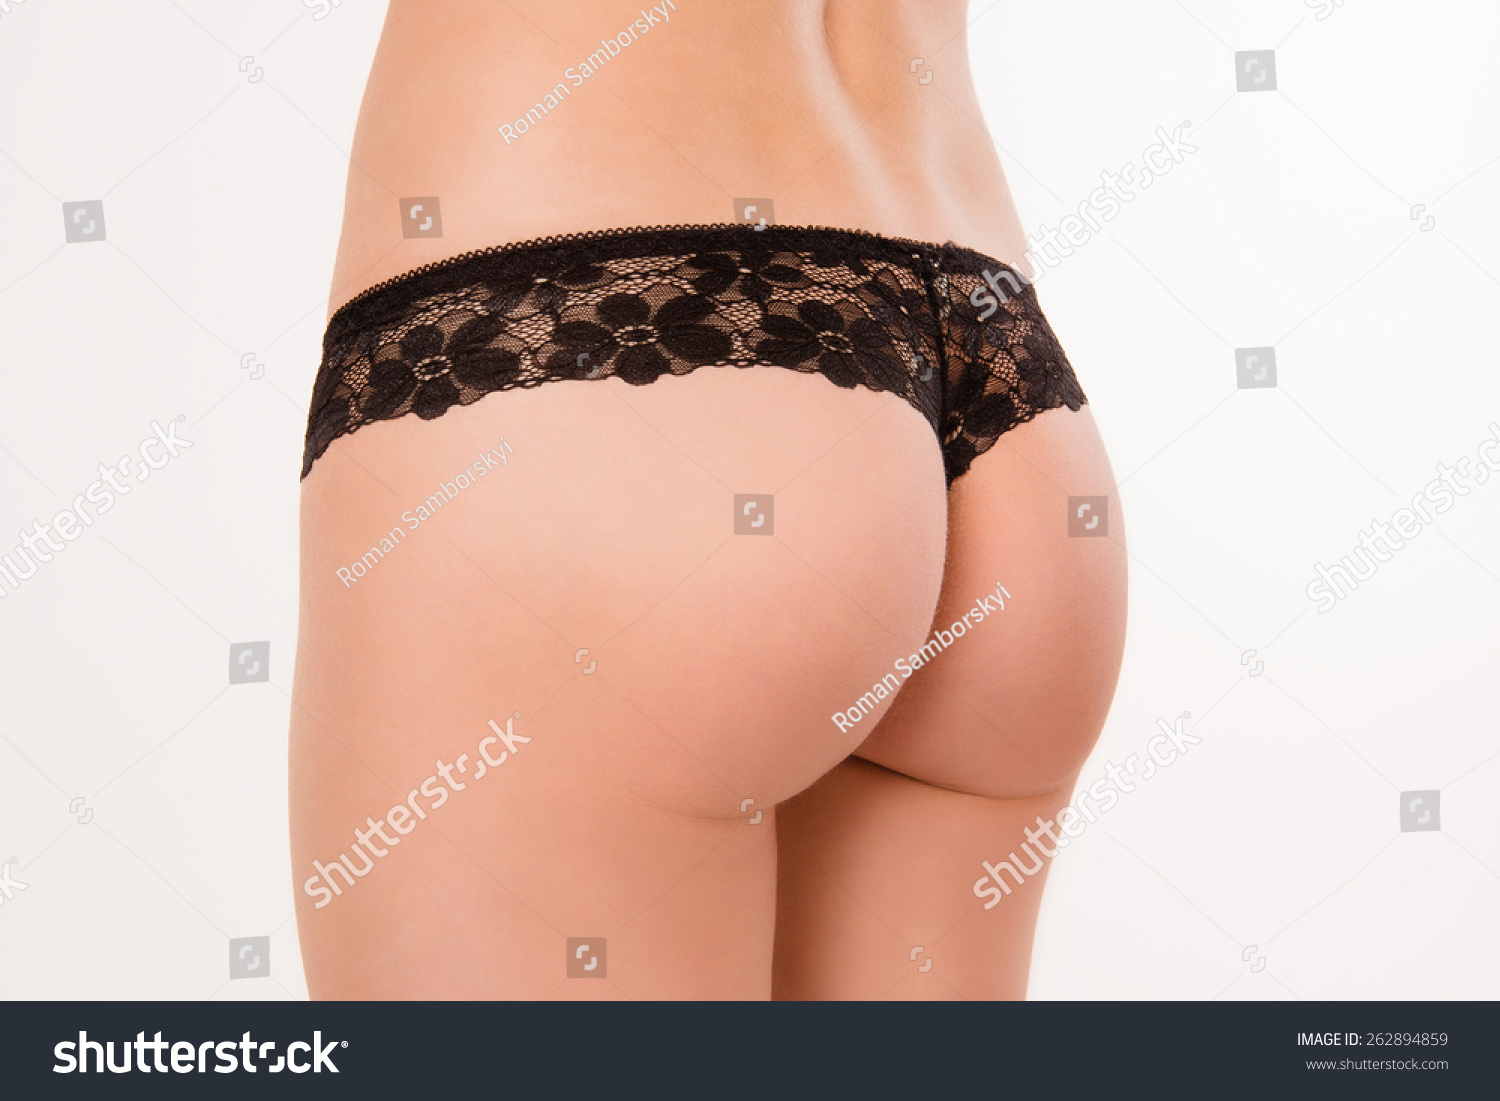 Nice Ass Images